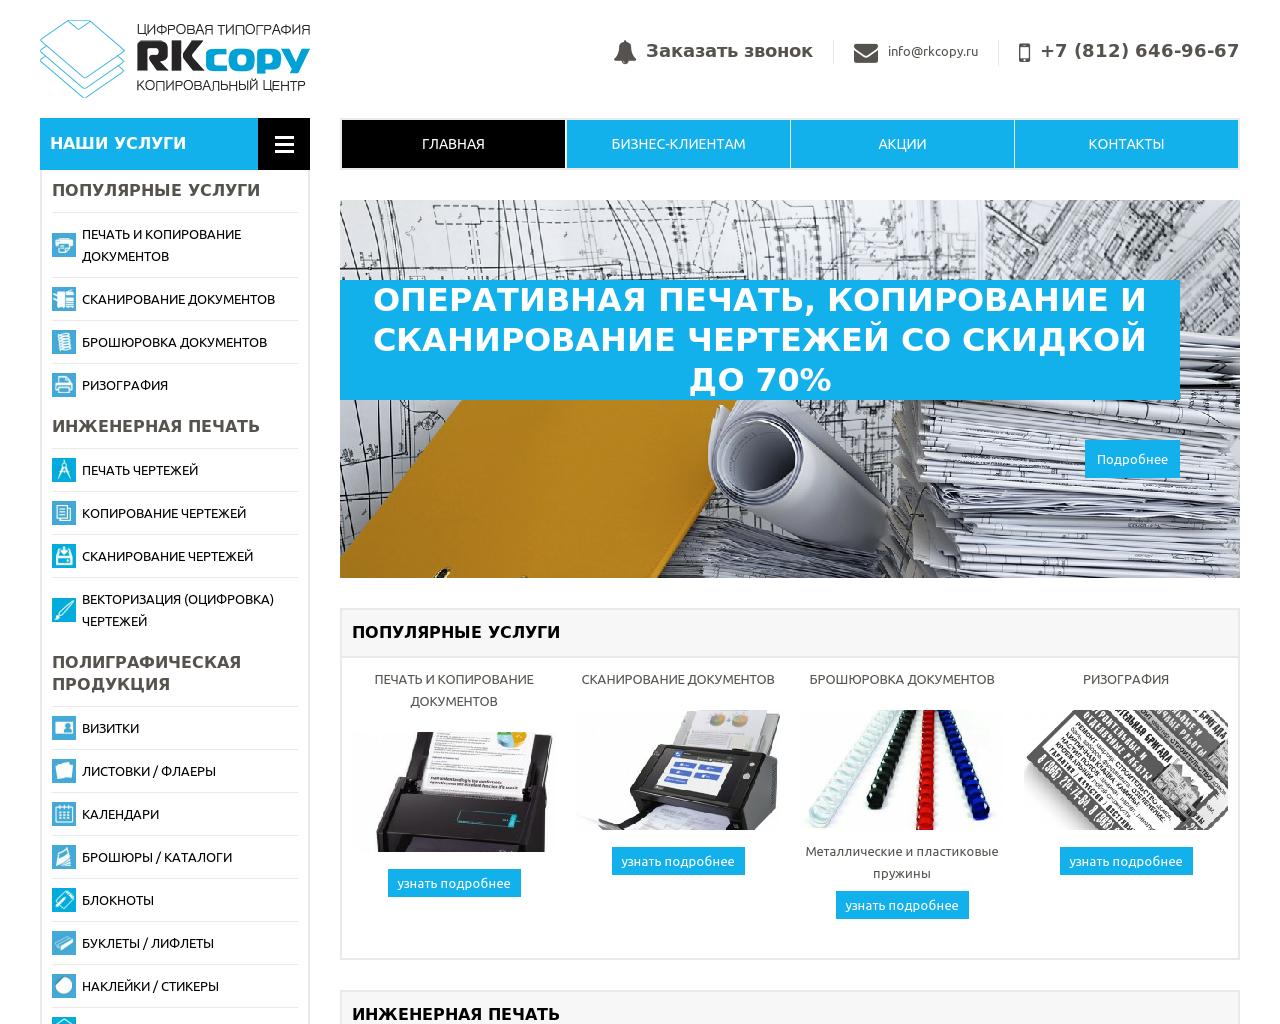 Изображение сайта rkcopy.ru в разрешении 1280x1024